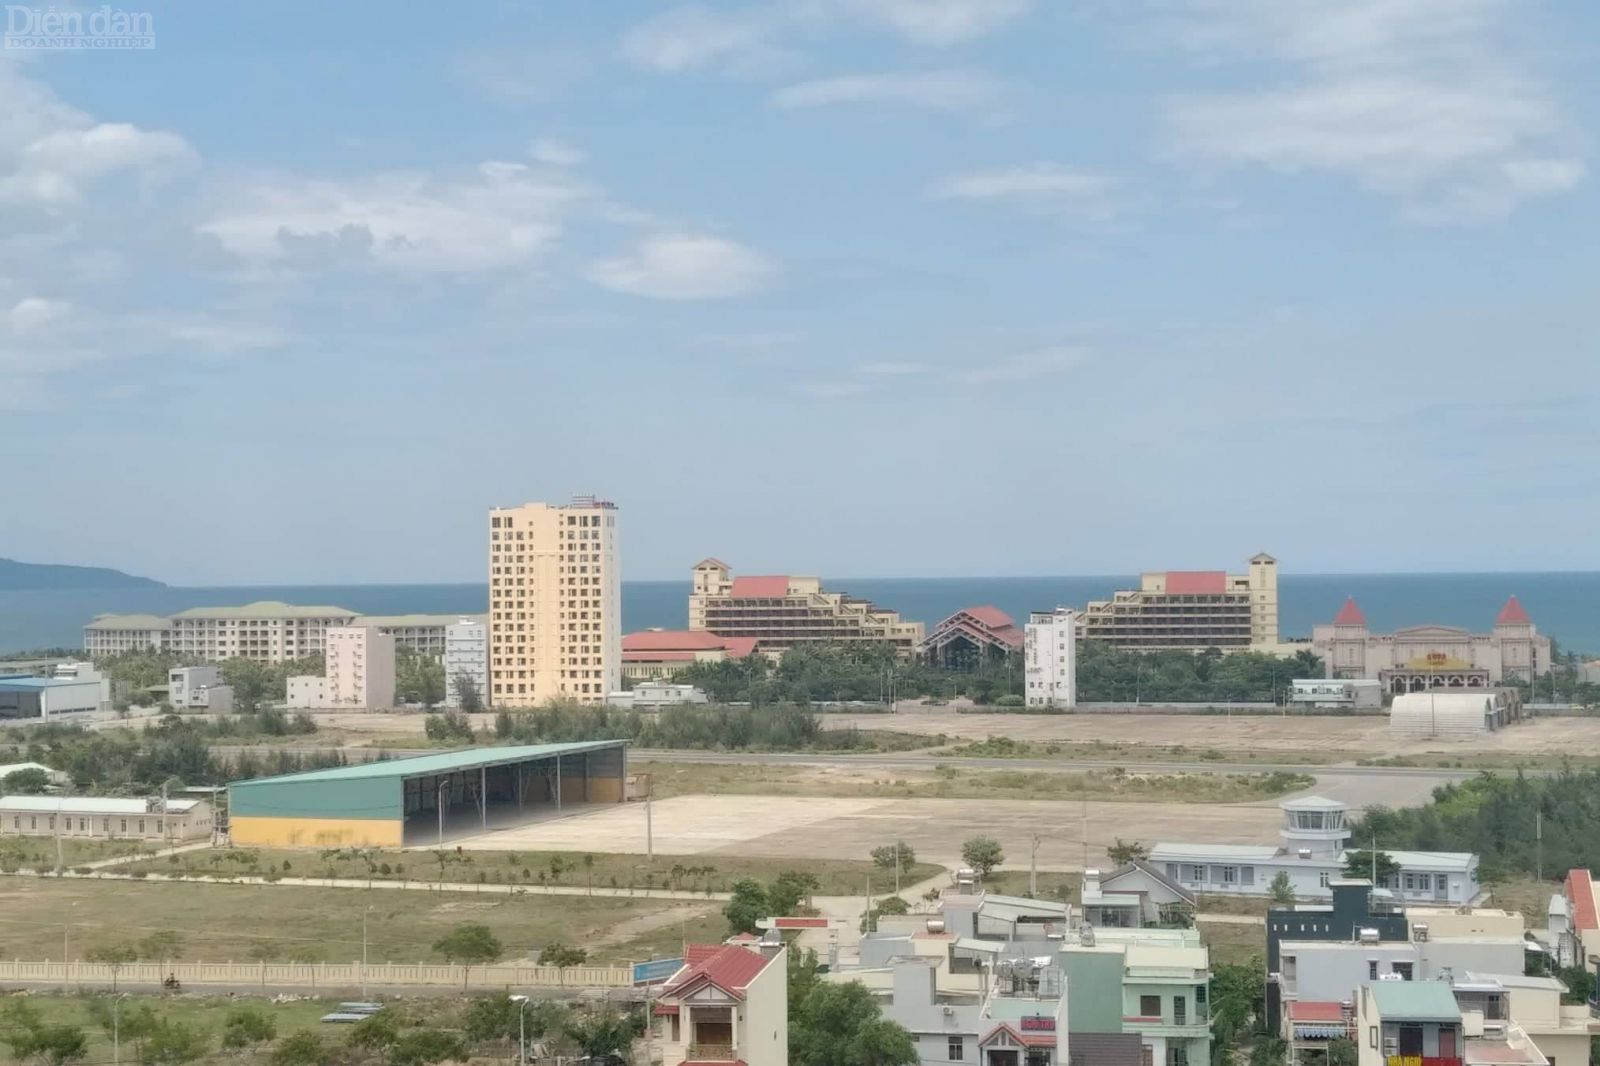 từ năm 2011 đến 2015, trên địa bàn khu vực biên giới biển TP.Đà Nẵng có 134 lô, 1 thửa đất liên quan đến cá nhân, doanh nghiệp người Trung Quốc đang sở hữu, “núp bóng” sở hữu và thuê của UBND TP.Đà Nẵng.